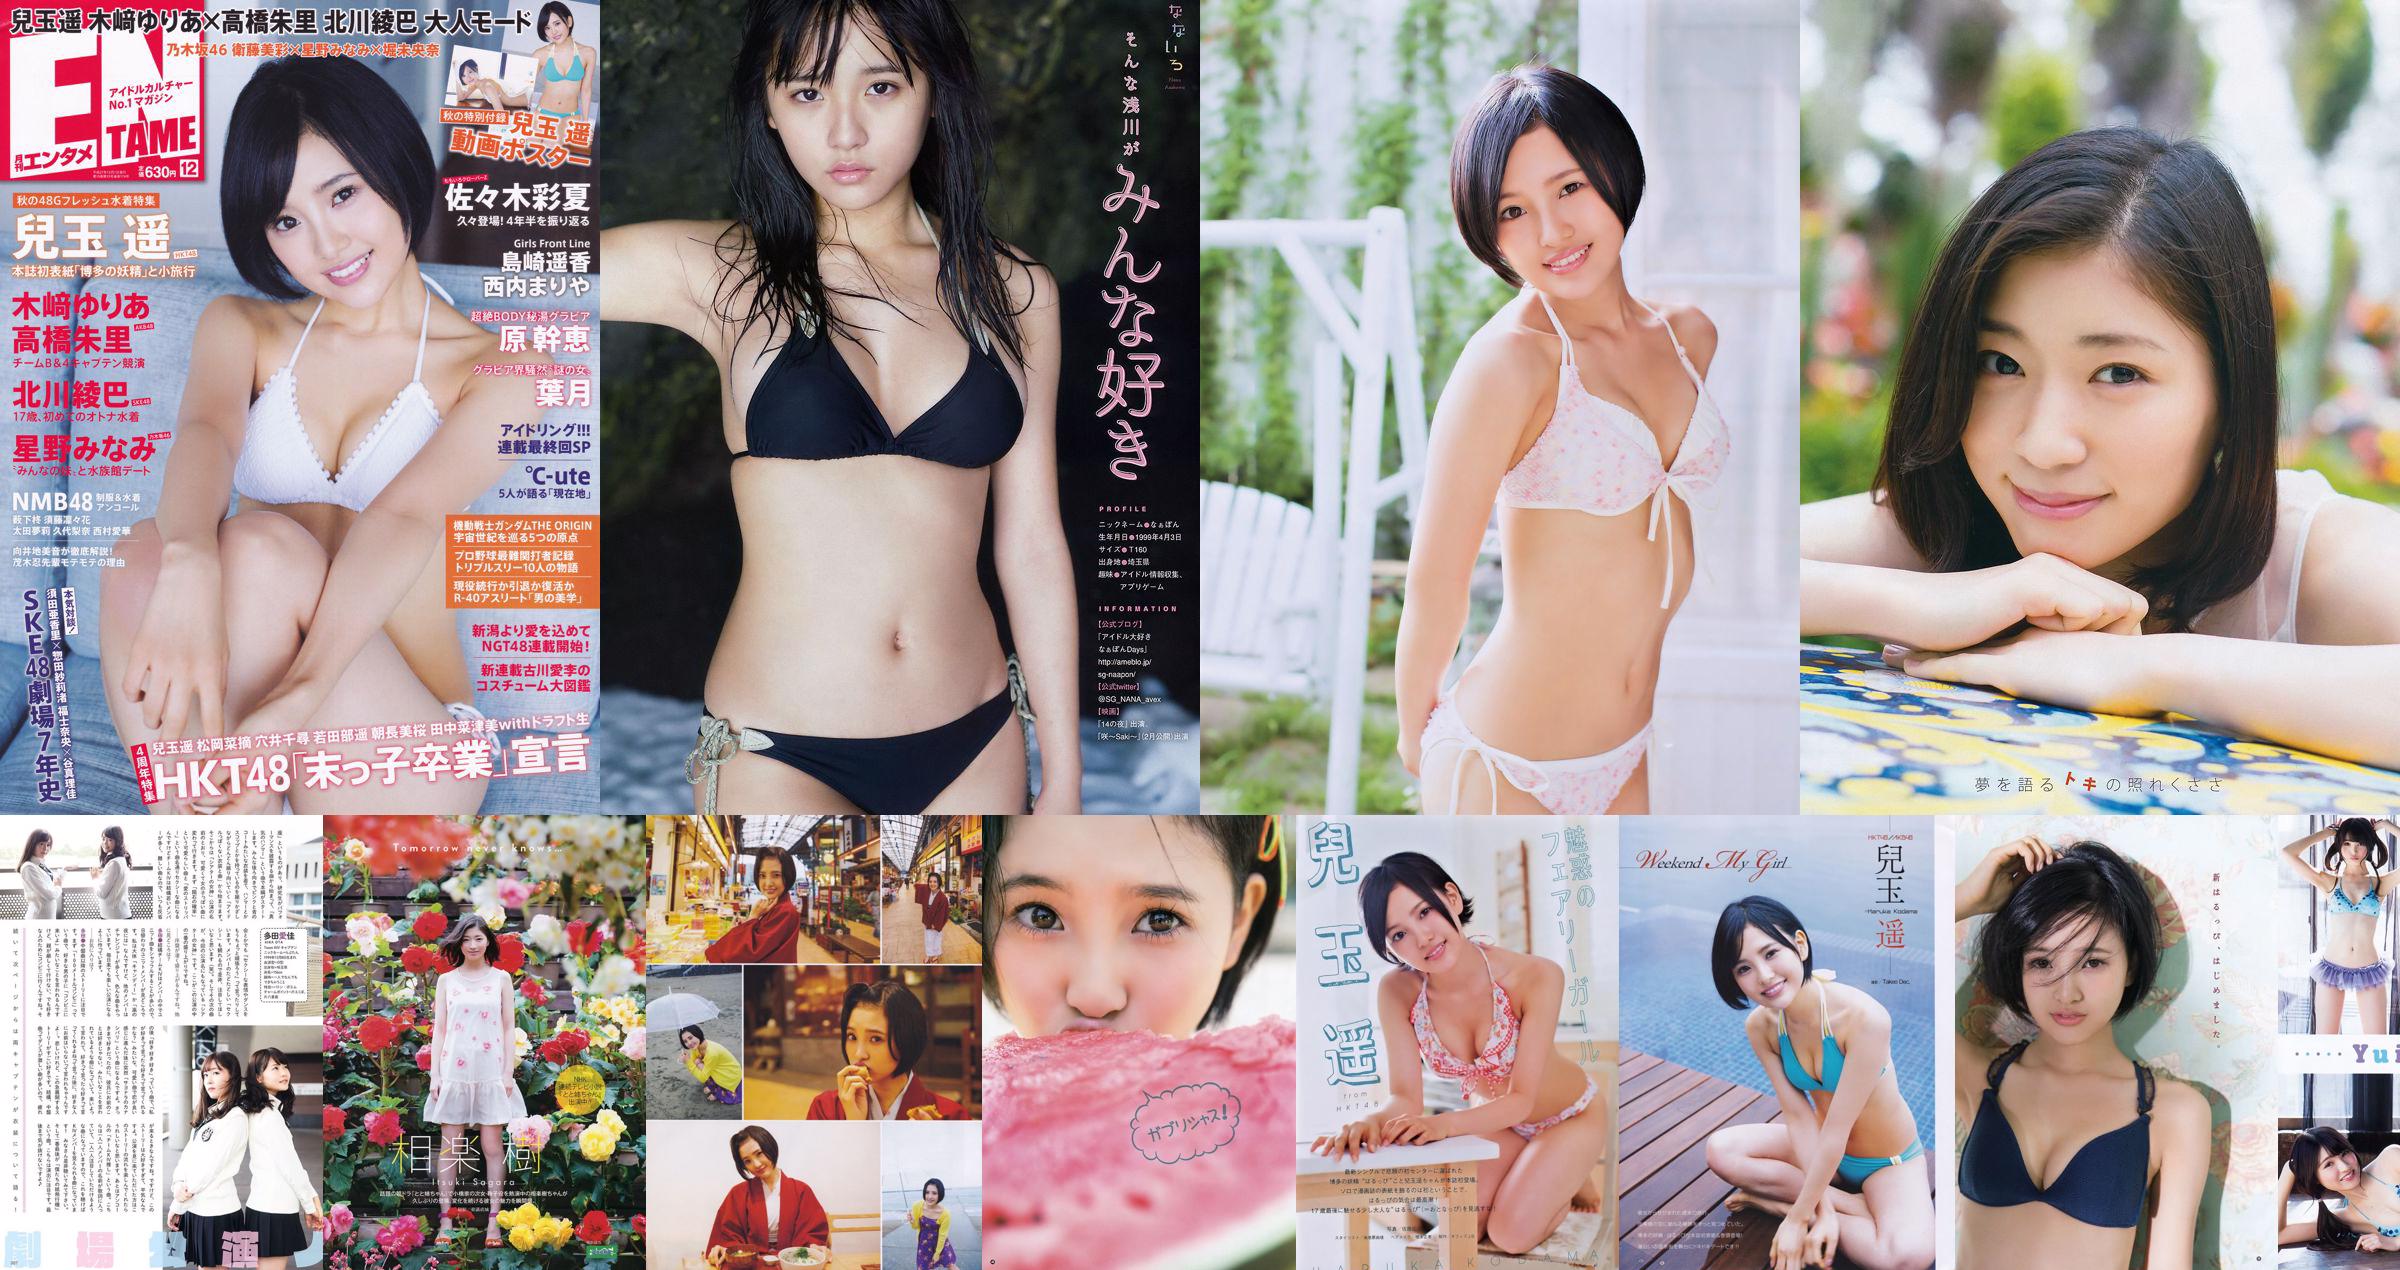 [Young Gangan] Haruka Kodama Saki Takeda 2015 No.12 Photo Palet No.384c96 Trang 1